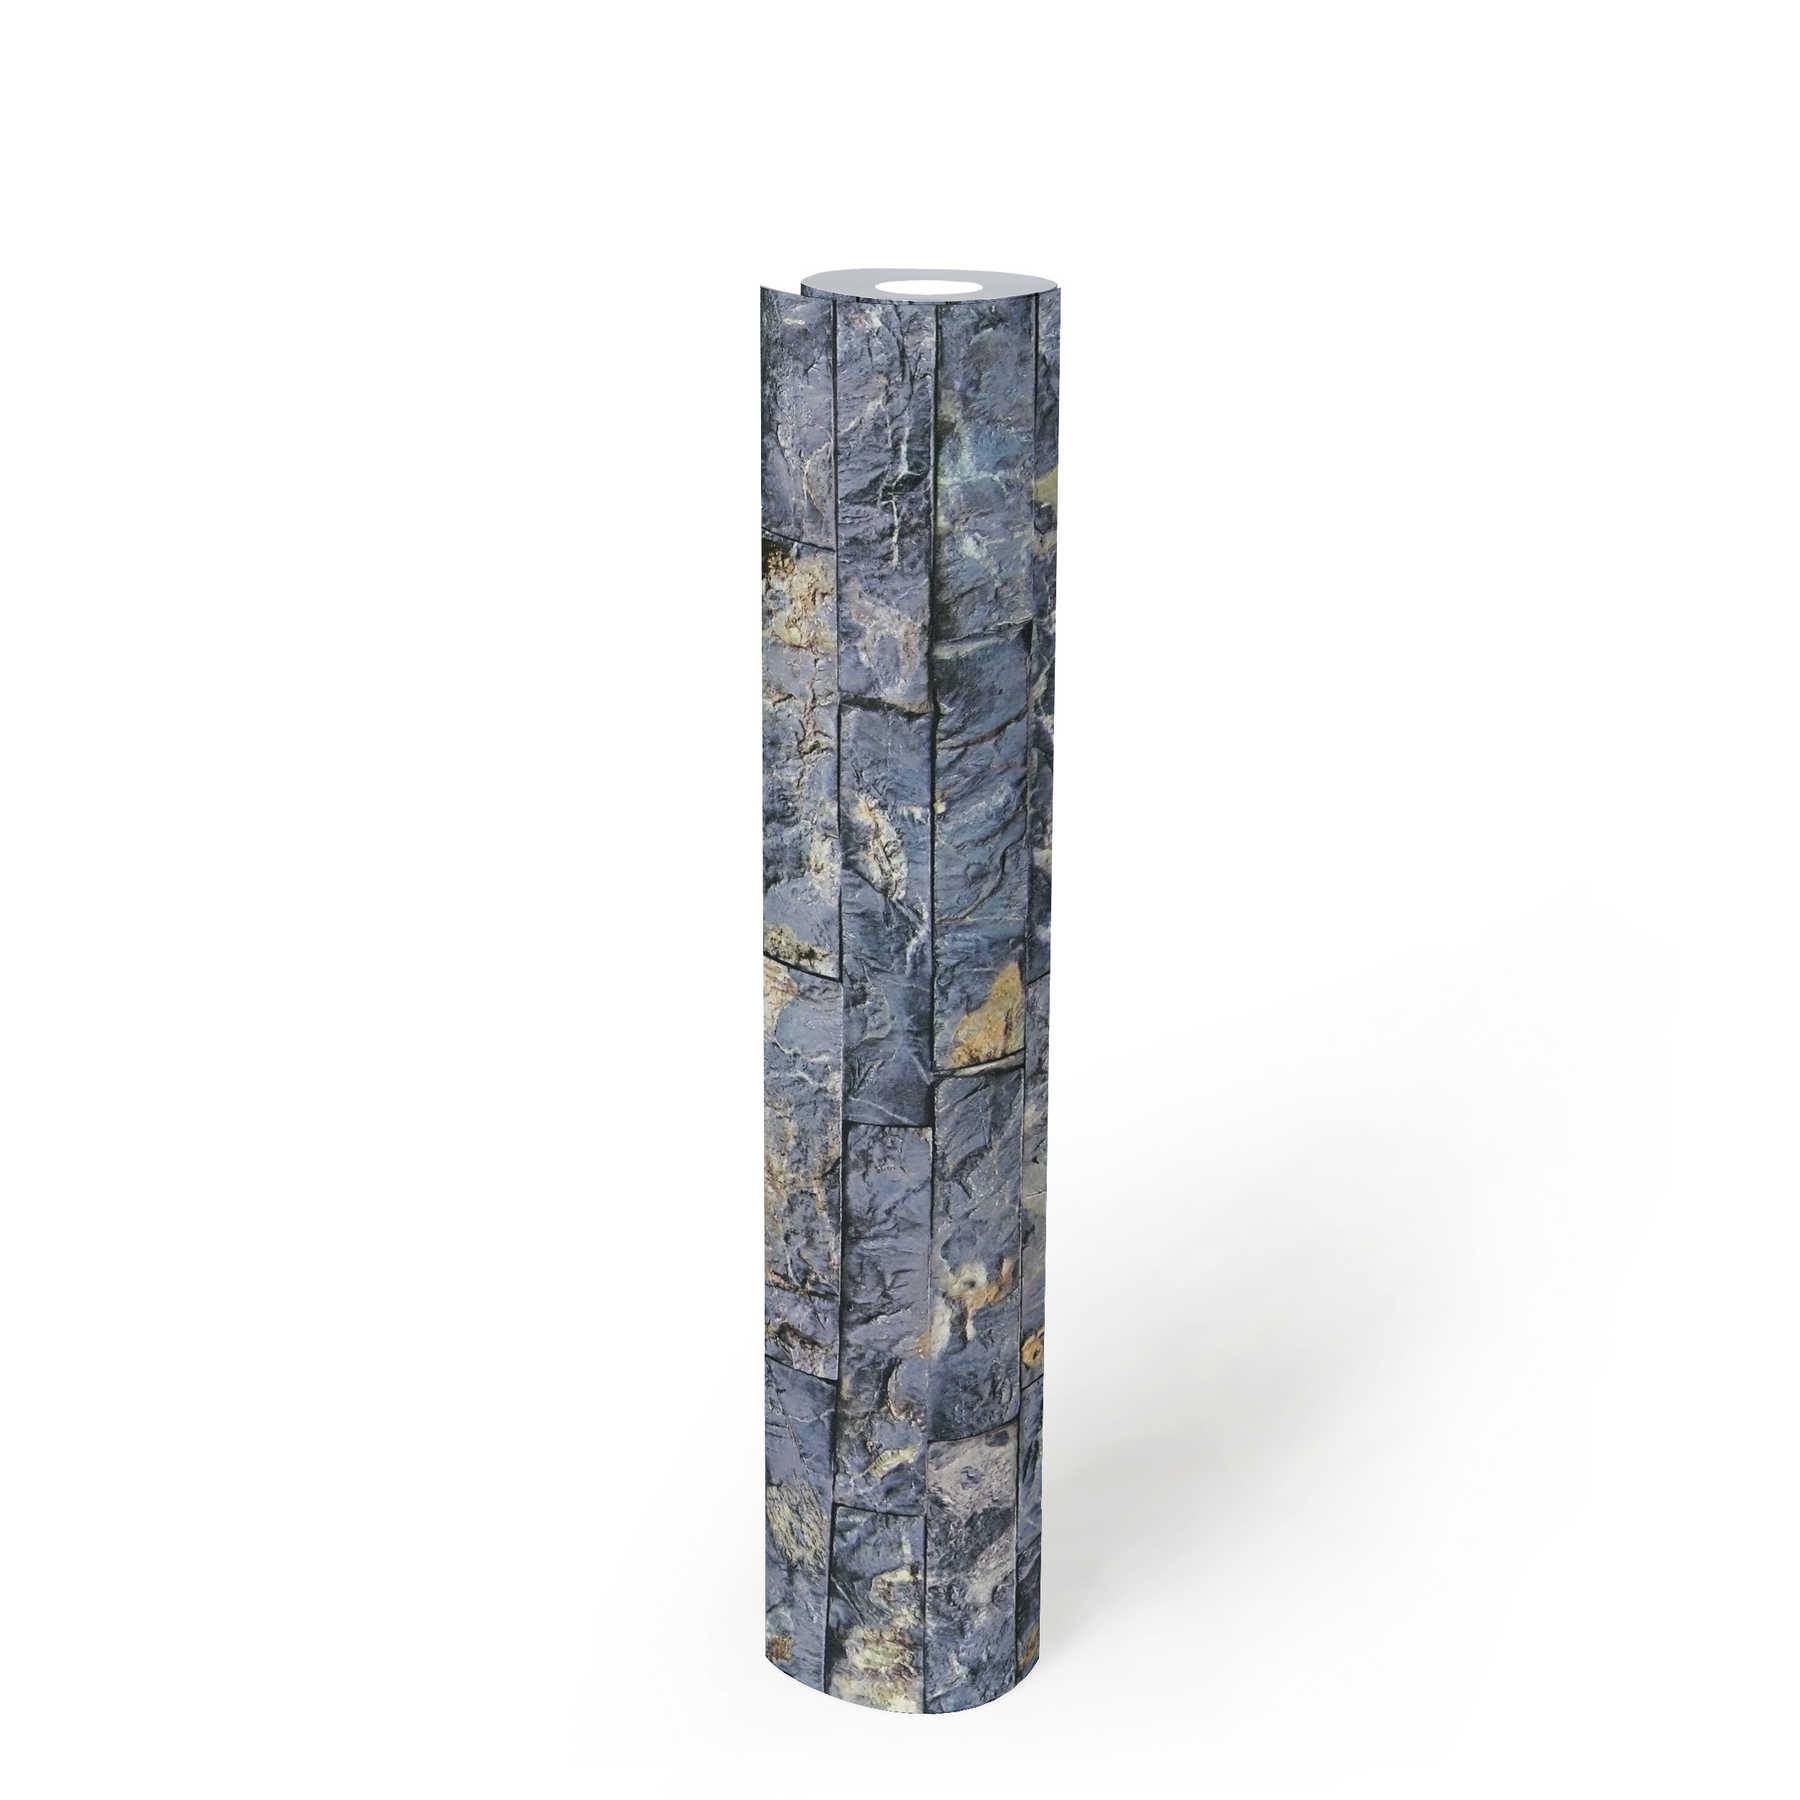             behang steenoptiek met 3D metselwerk kwartssteen - blauw, grijs
        